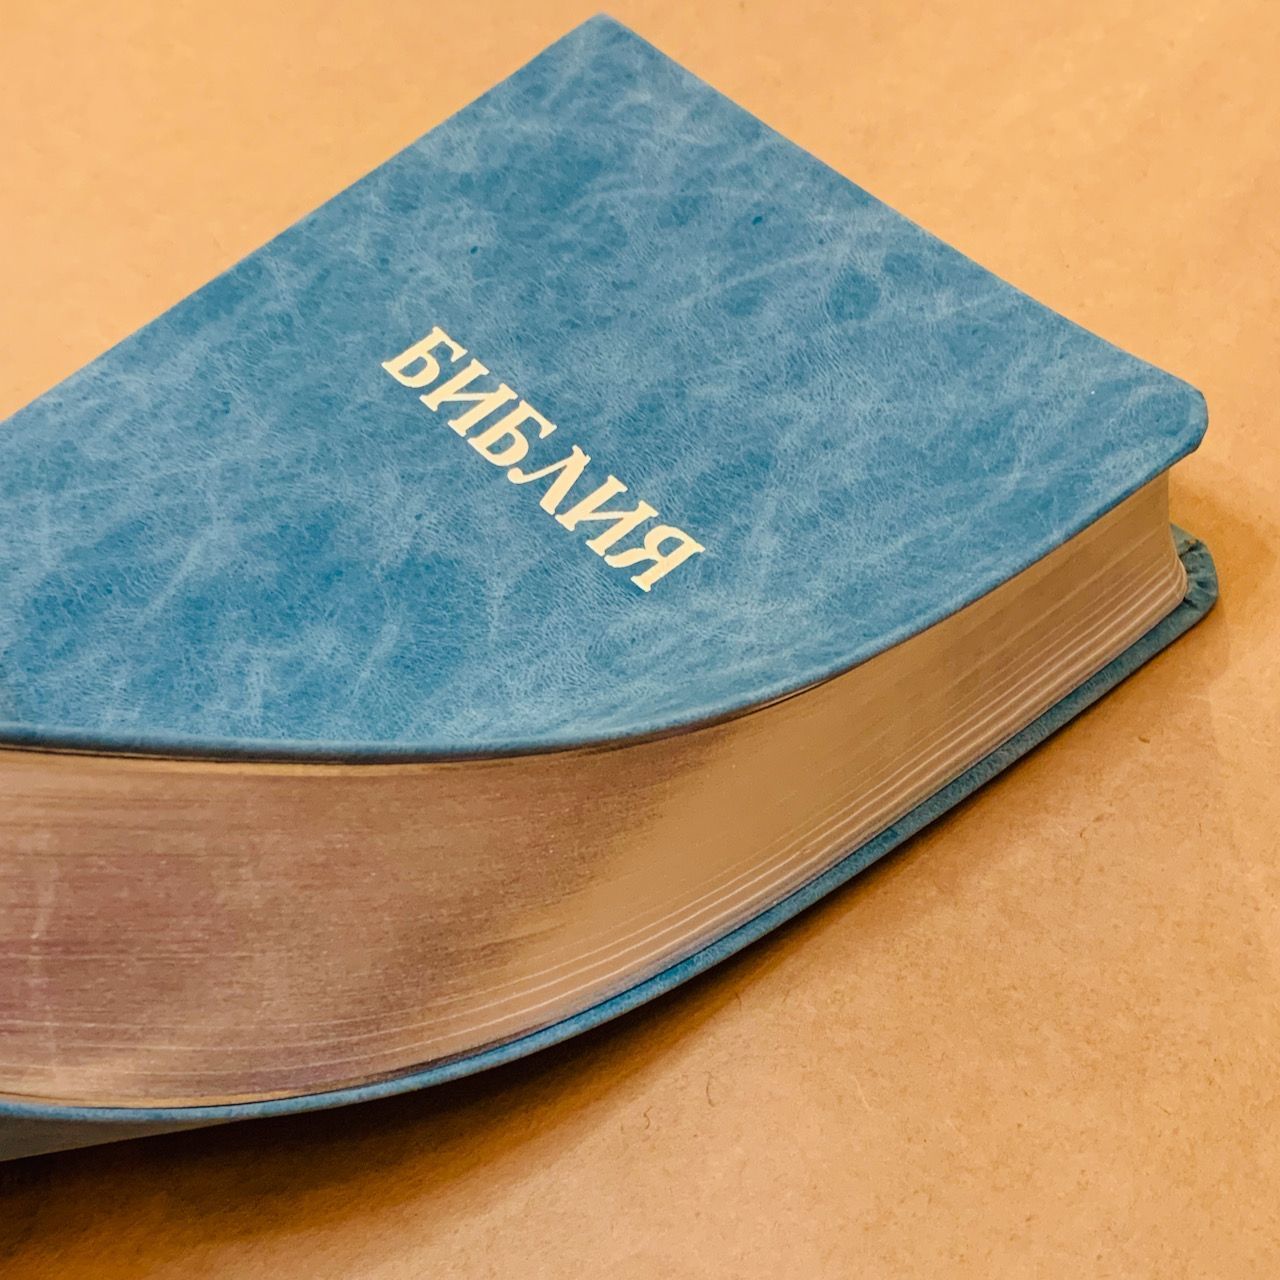 Библия 048 код D8  надпись "библия", кожаный переплет, цвет бирюзовый, формат 125*190 мм, серебряный обрез, синодальный перевод, паралельные места по центру страницы, 2 закладки, шрифт 10-11 кегель, цветные карты